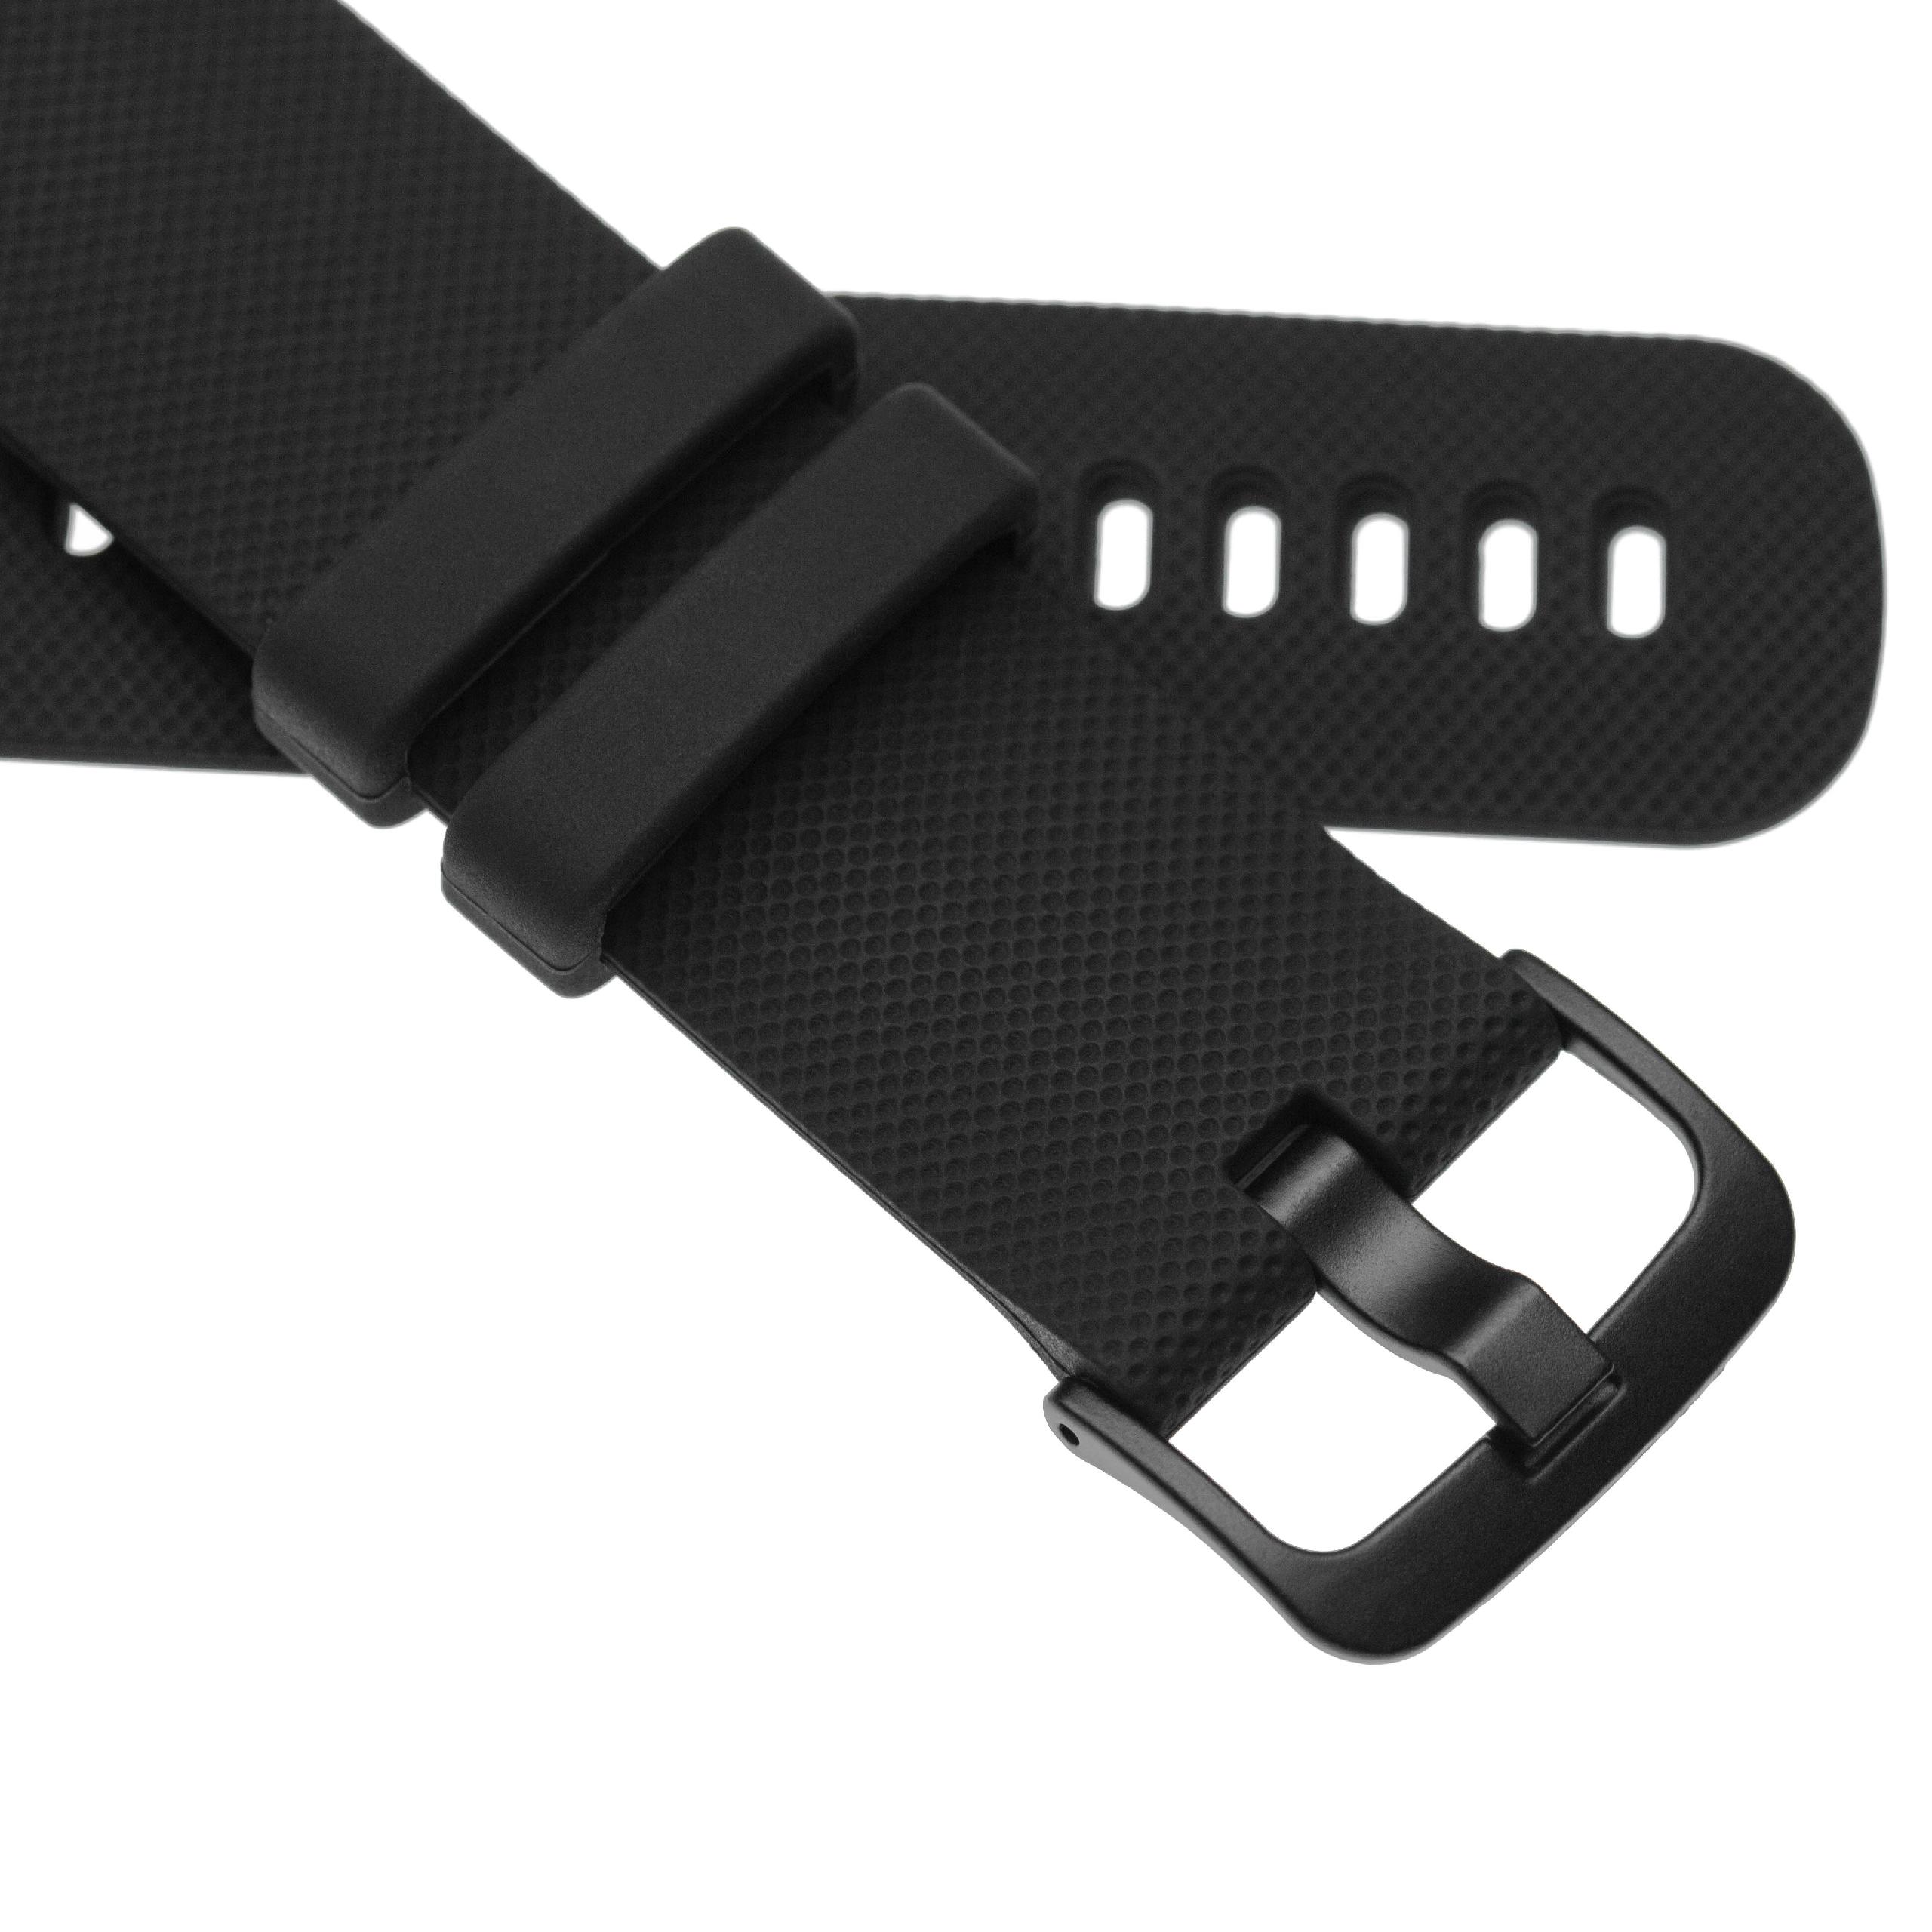 Armband für Garmin Vivoactive Smartwatch - 12,1 + 9,2 cm lang, 22mm breit, Silikon, schwarz